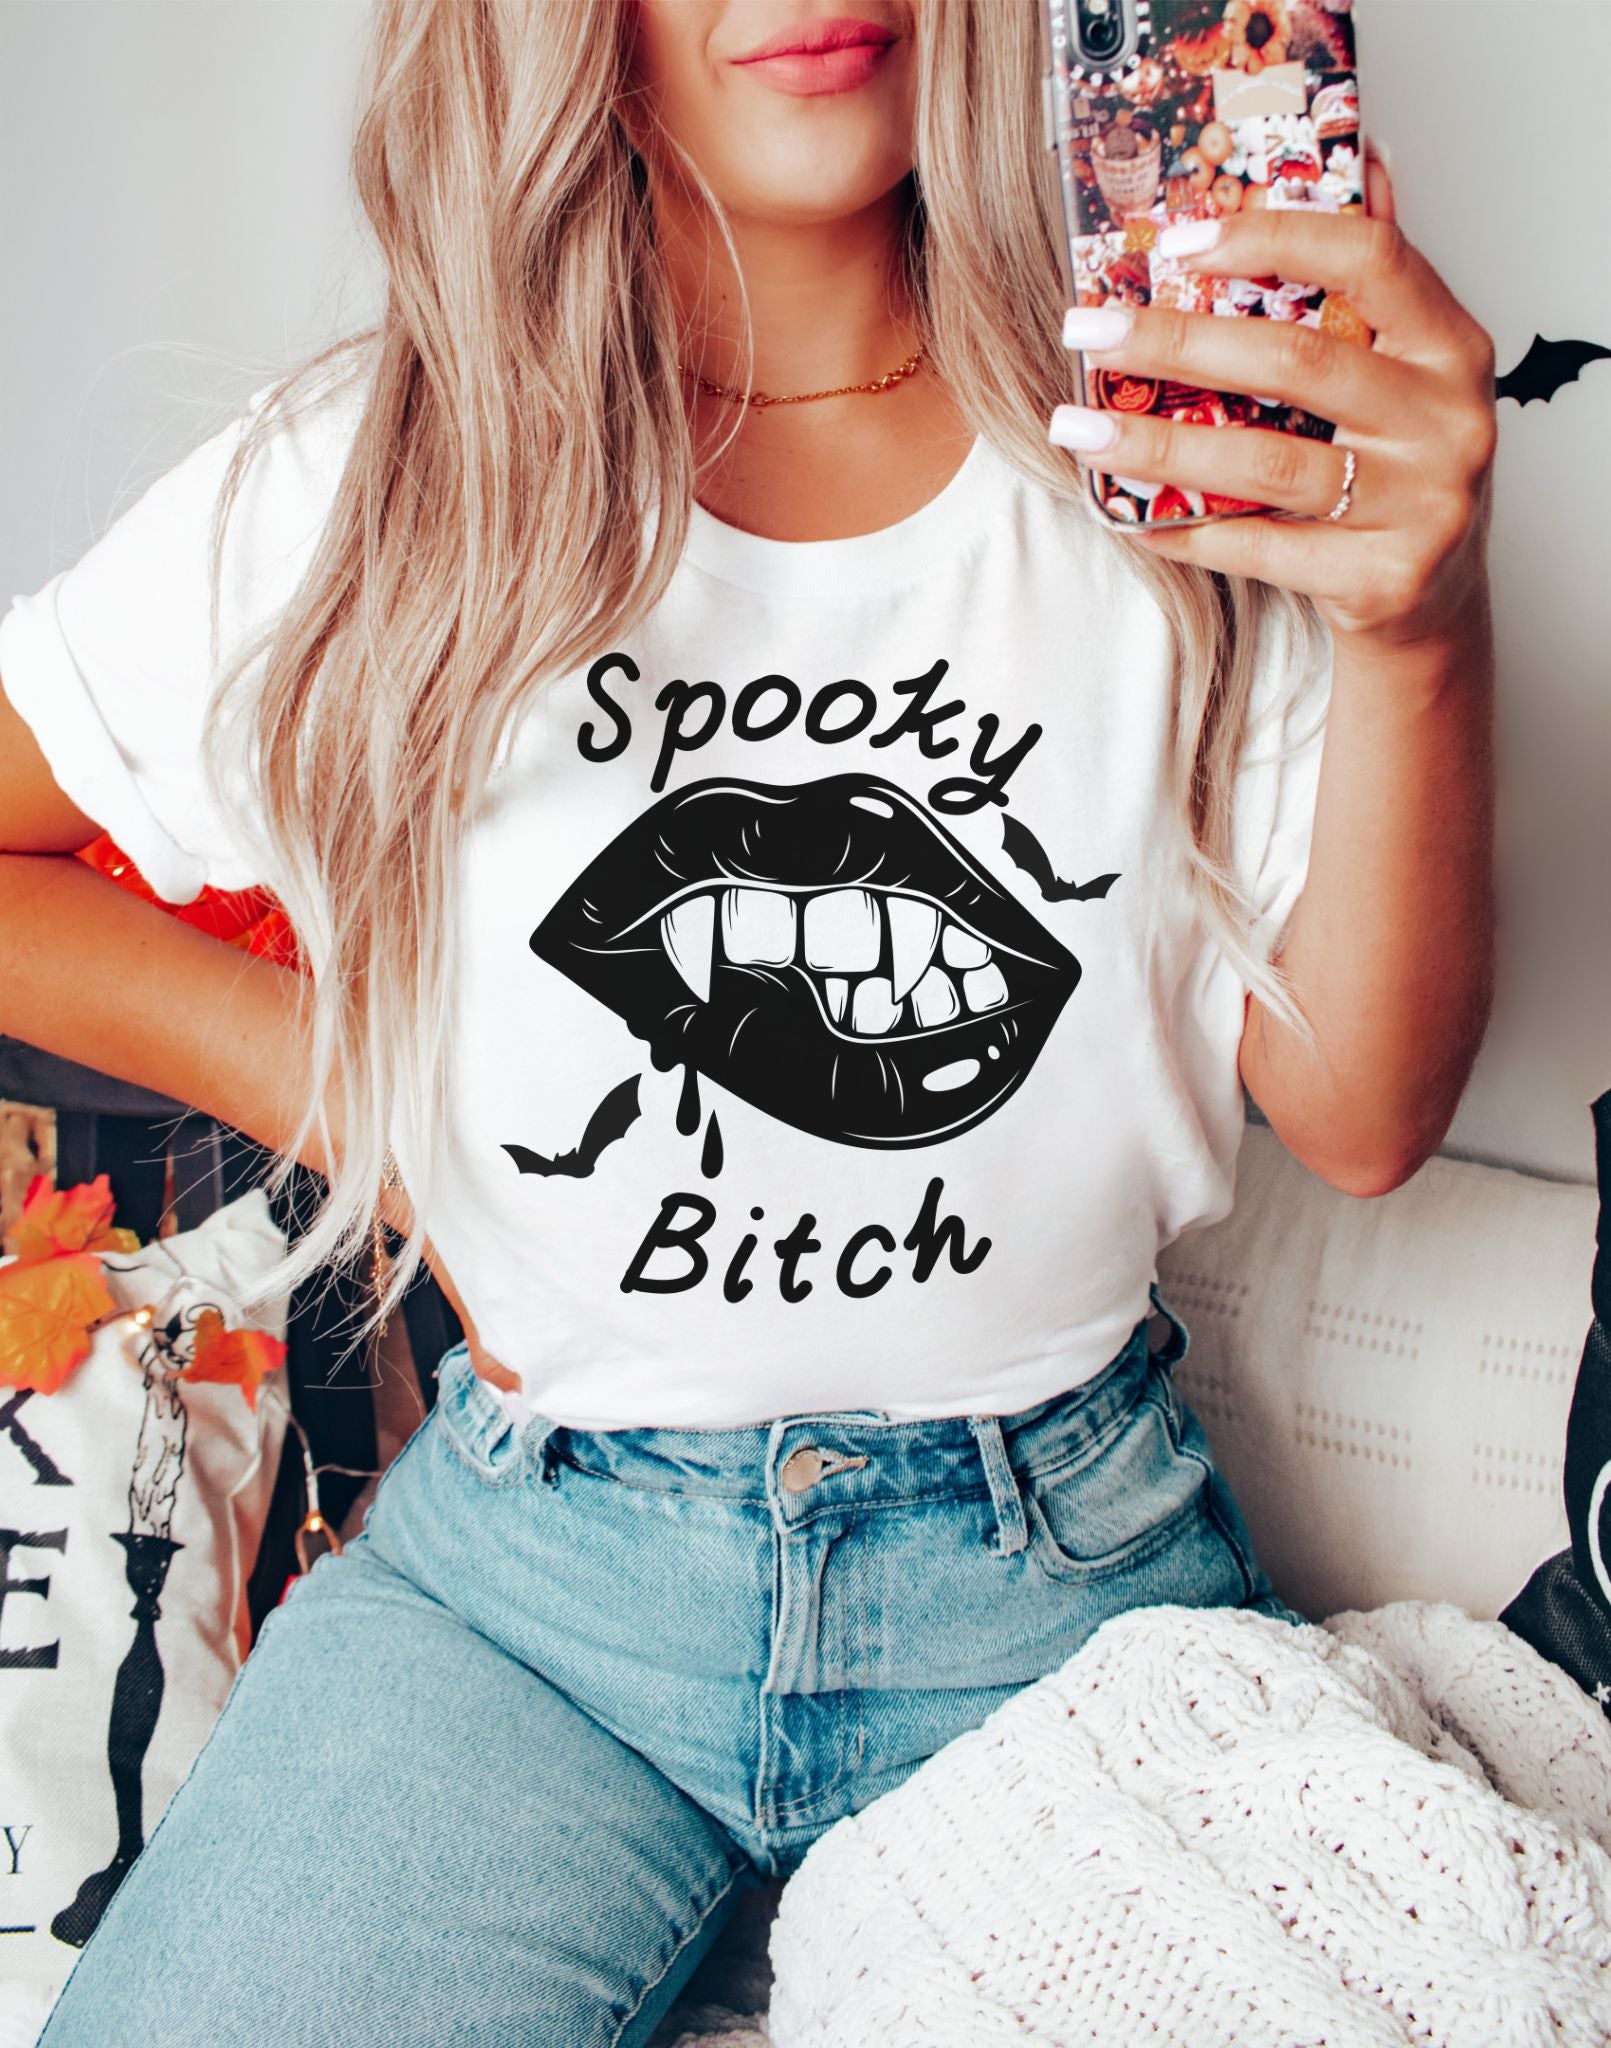 Spooky Bitch